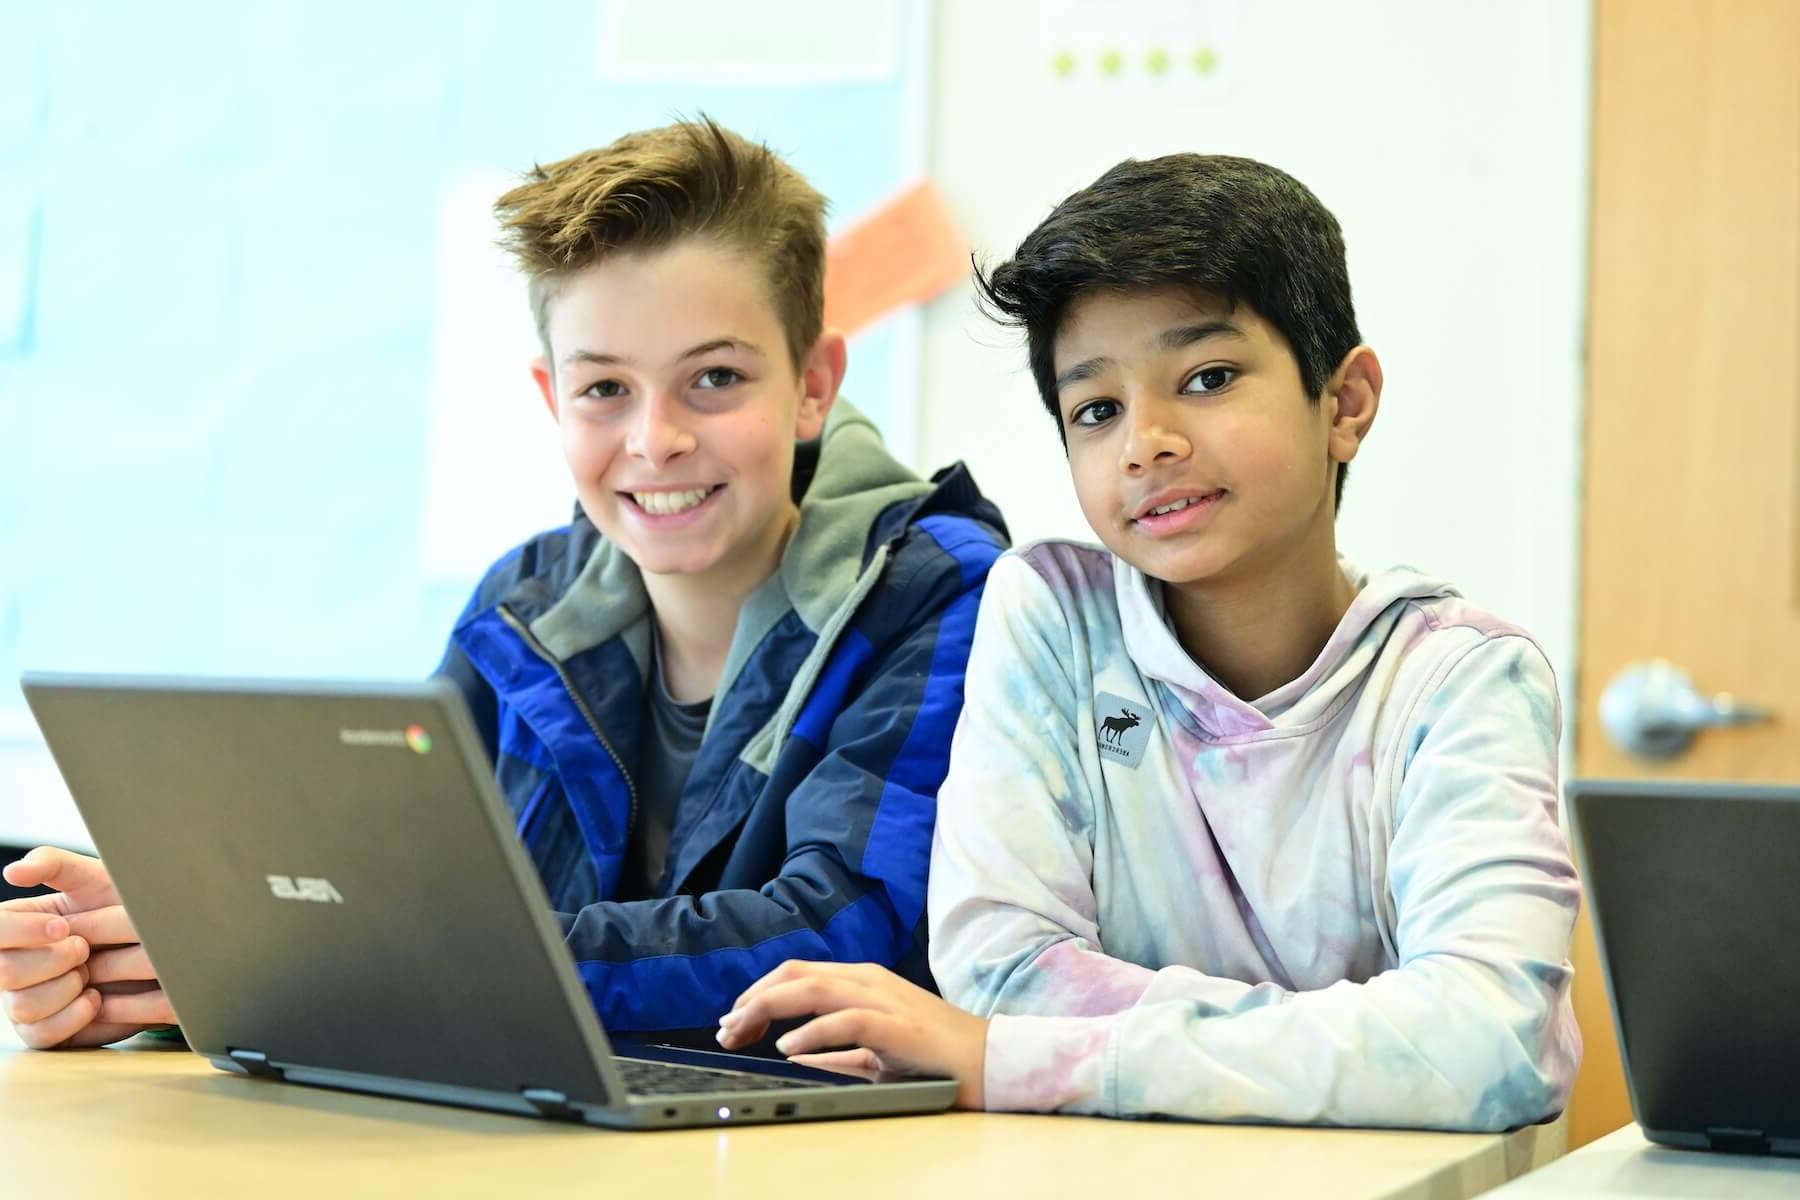 菲尔德斯顿中学的中学生们一起在电脑前工作，停下来对着镜头微笑